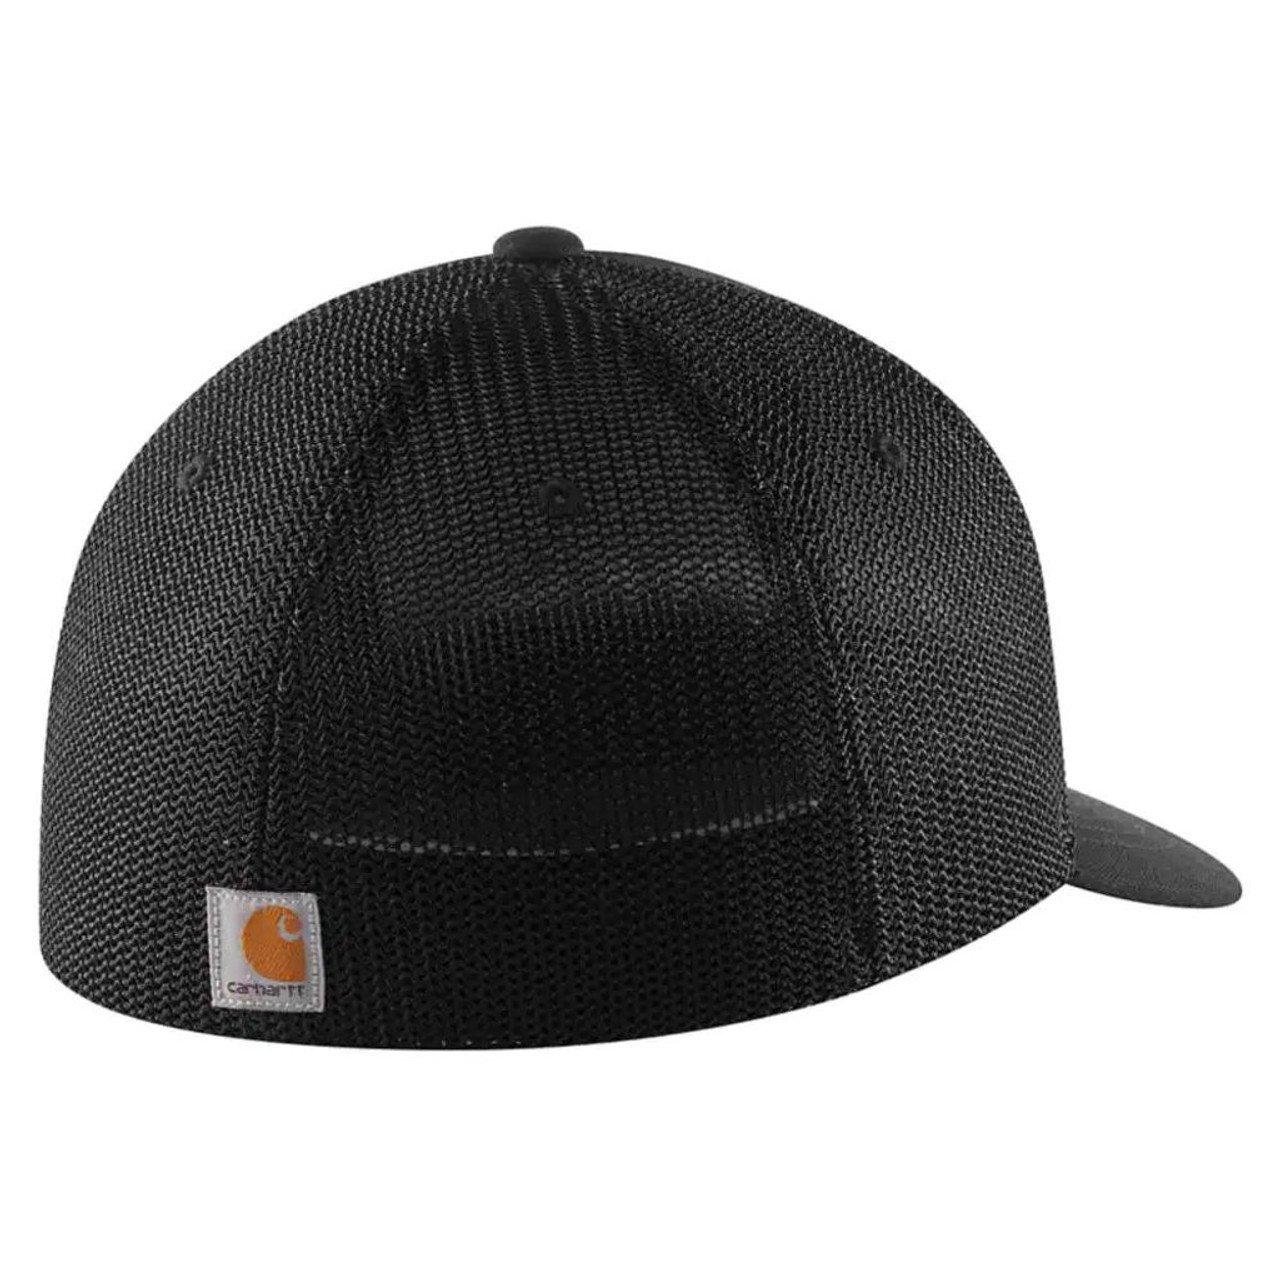 Flexfit Hats, Flexfitted Hats, Flexfit Caps